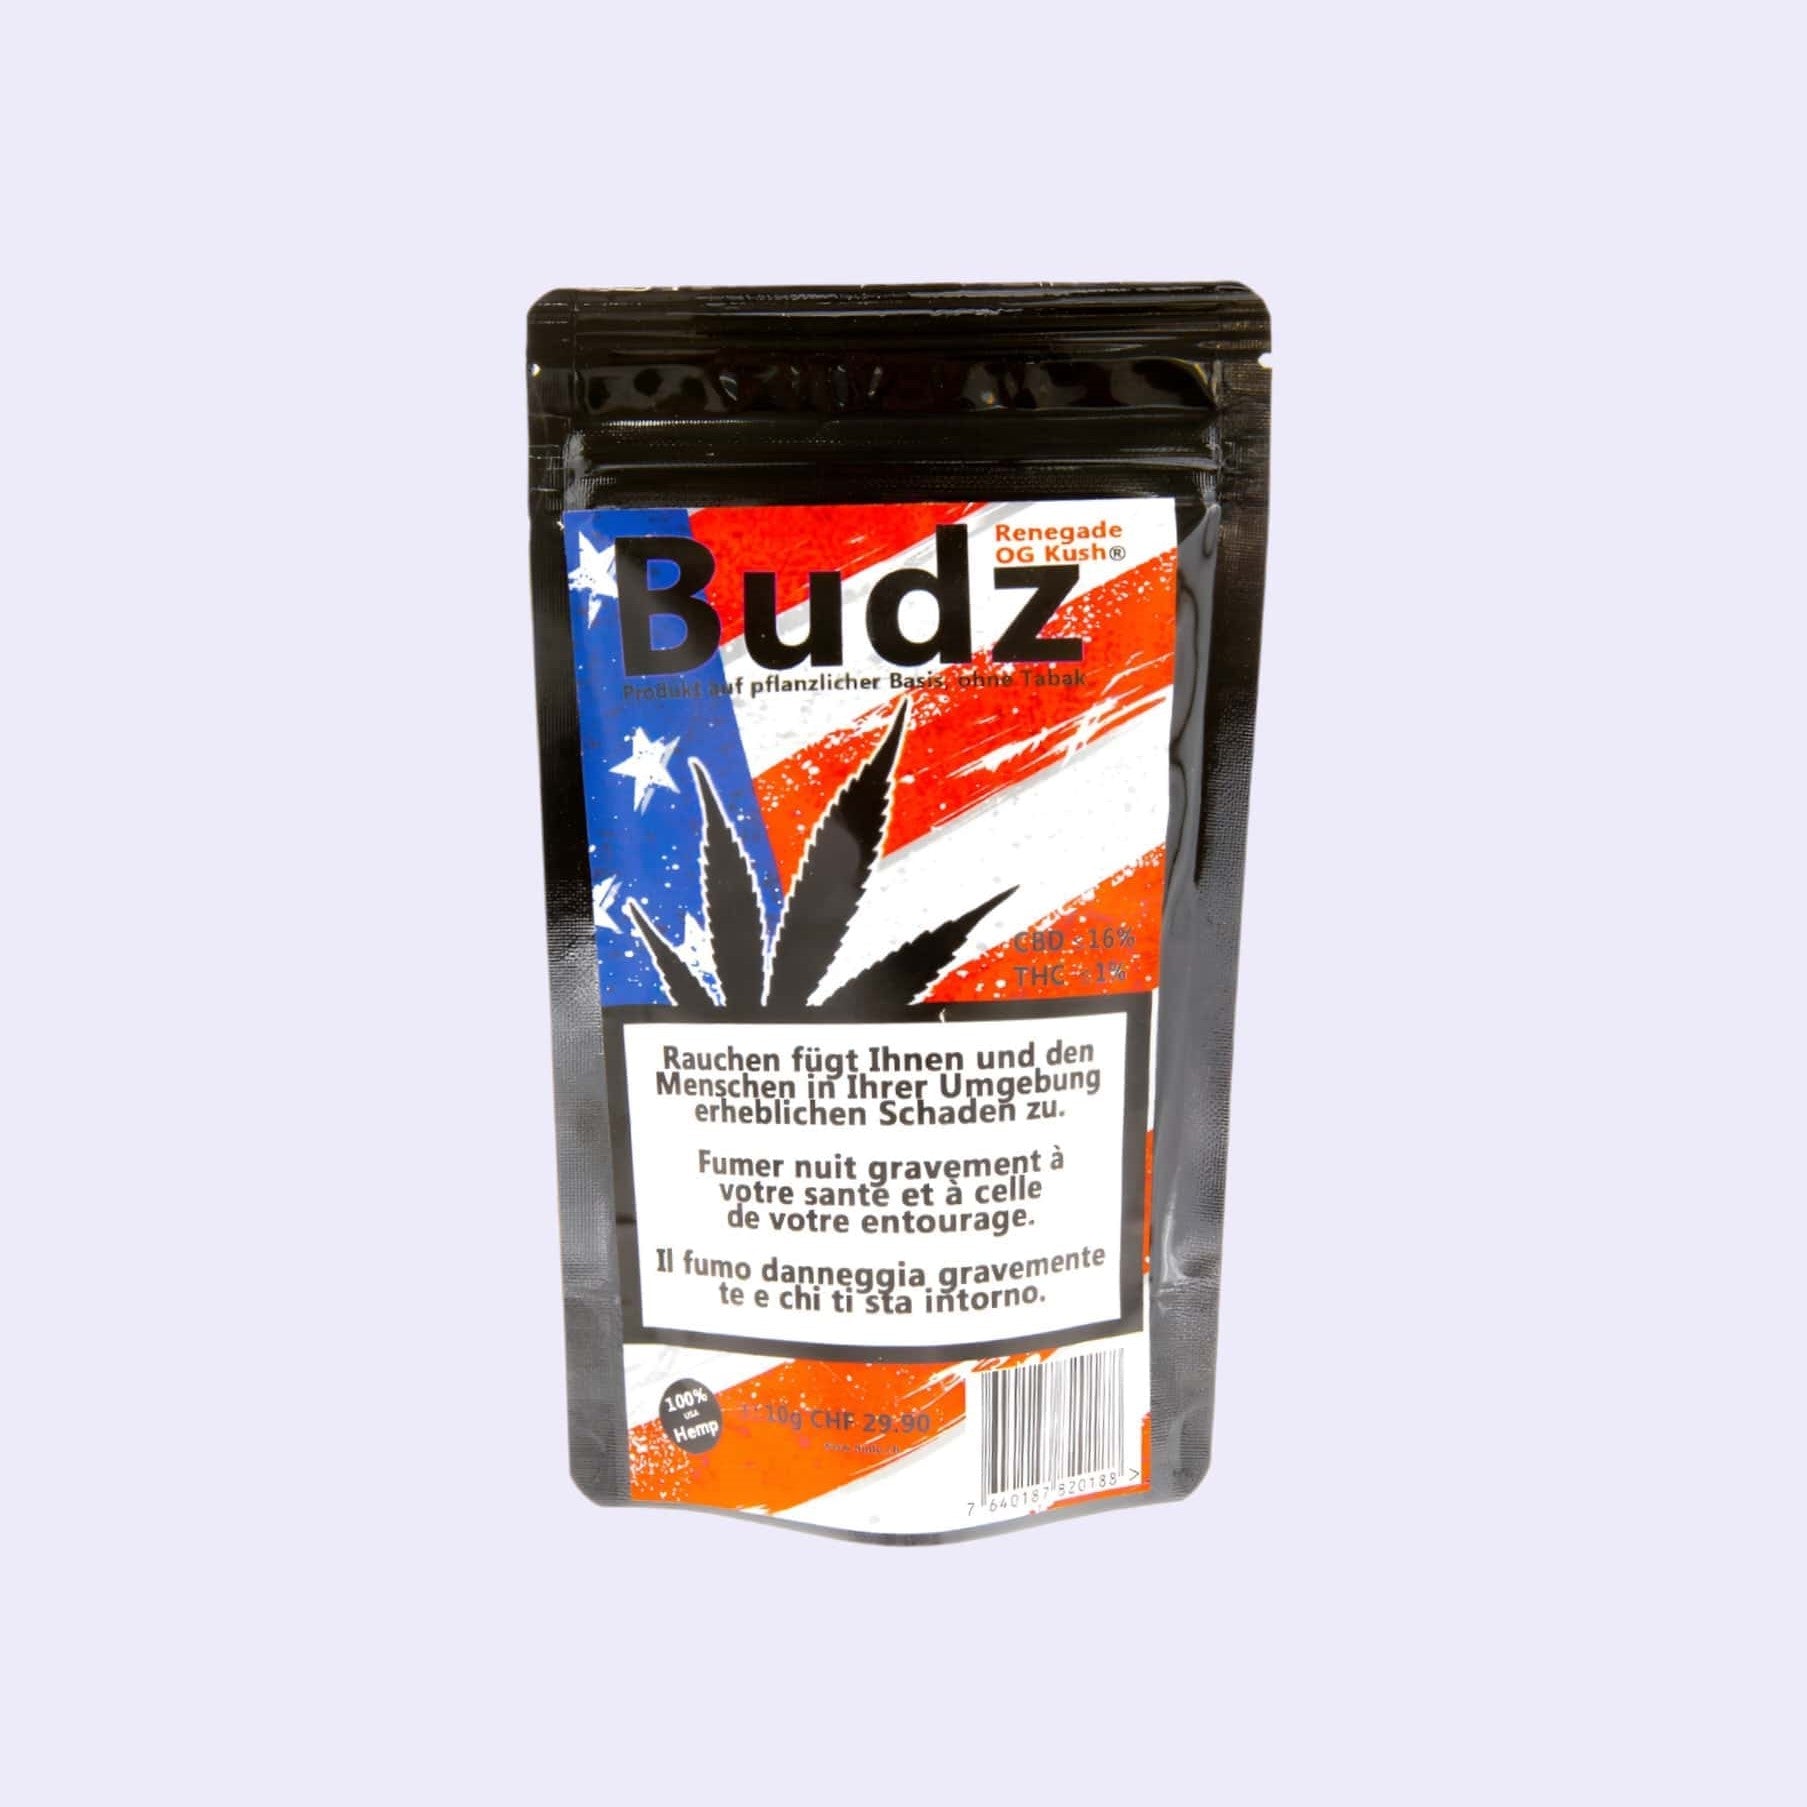 Dieses Bild zeigt die Outdoor CBD Blüten Renegade OG Kush von der Firma Budz